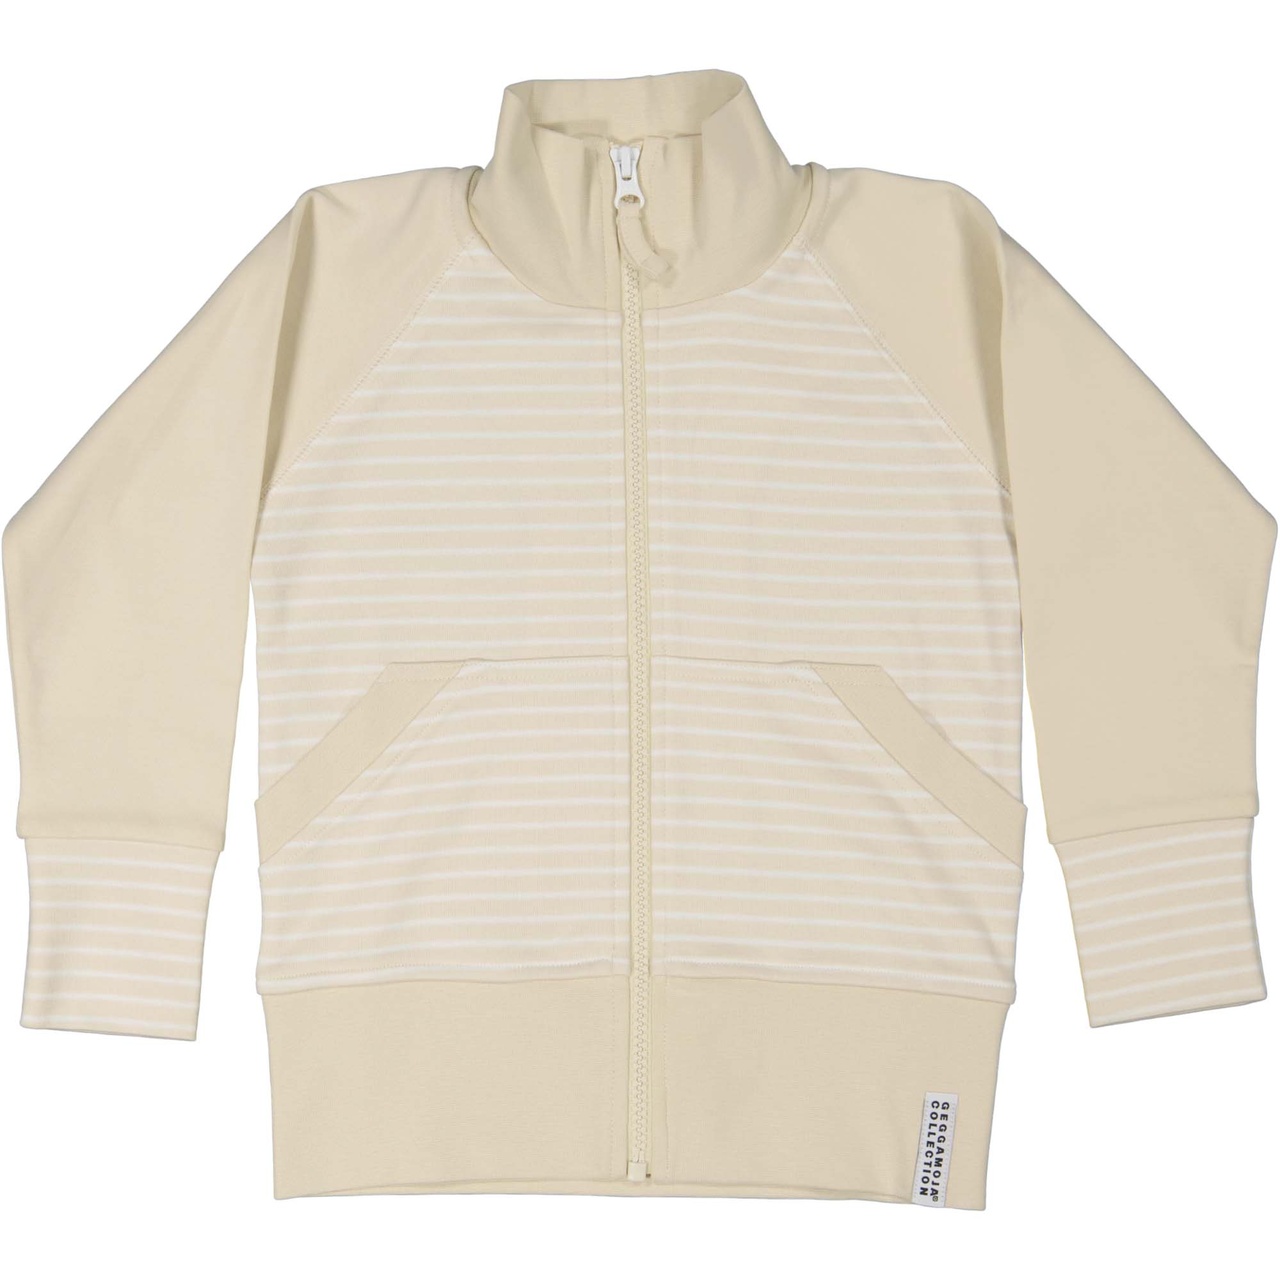 Zip sweater Beige/white 122/128